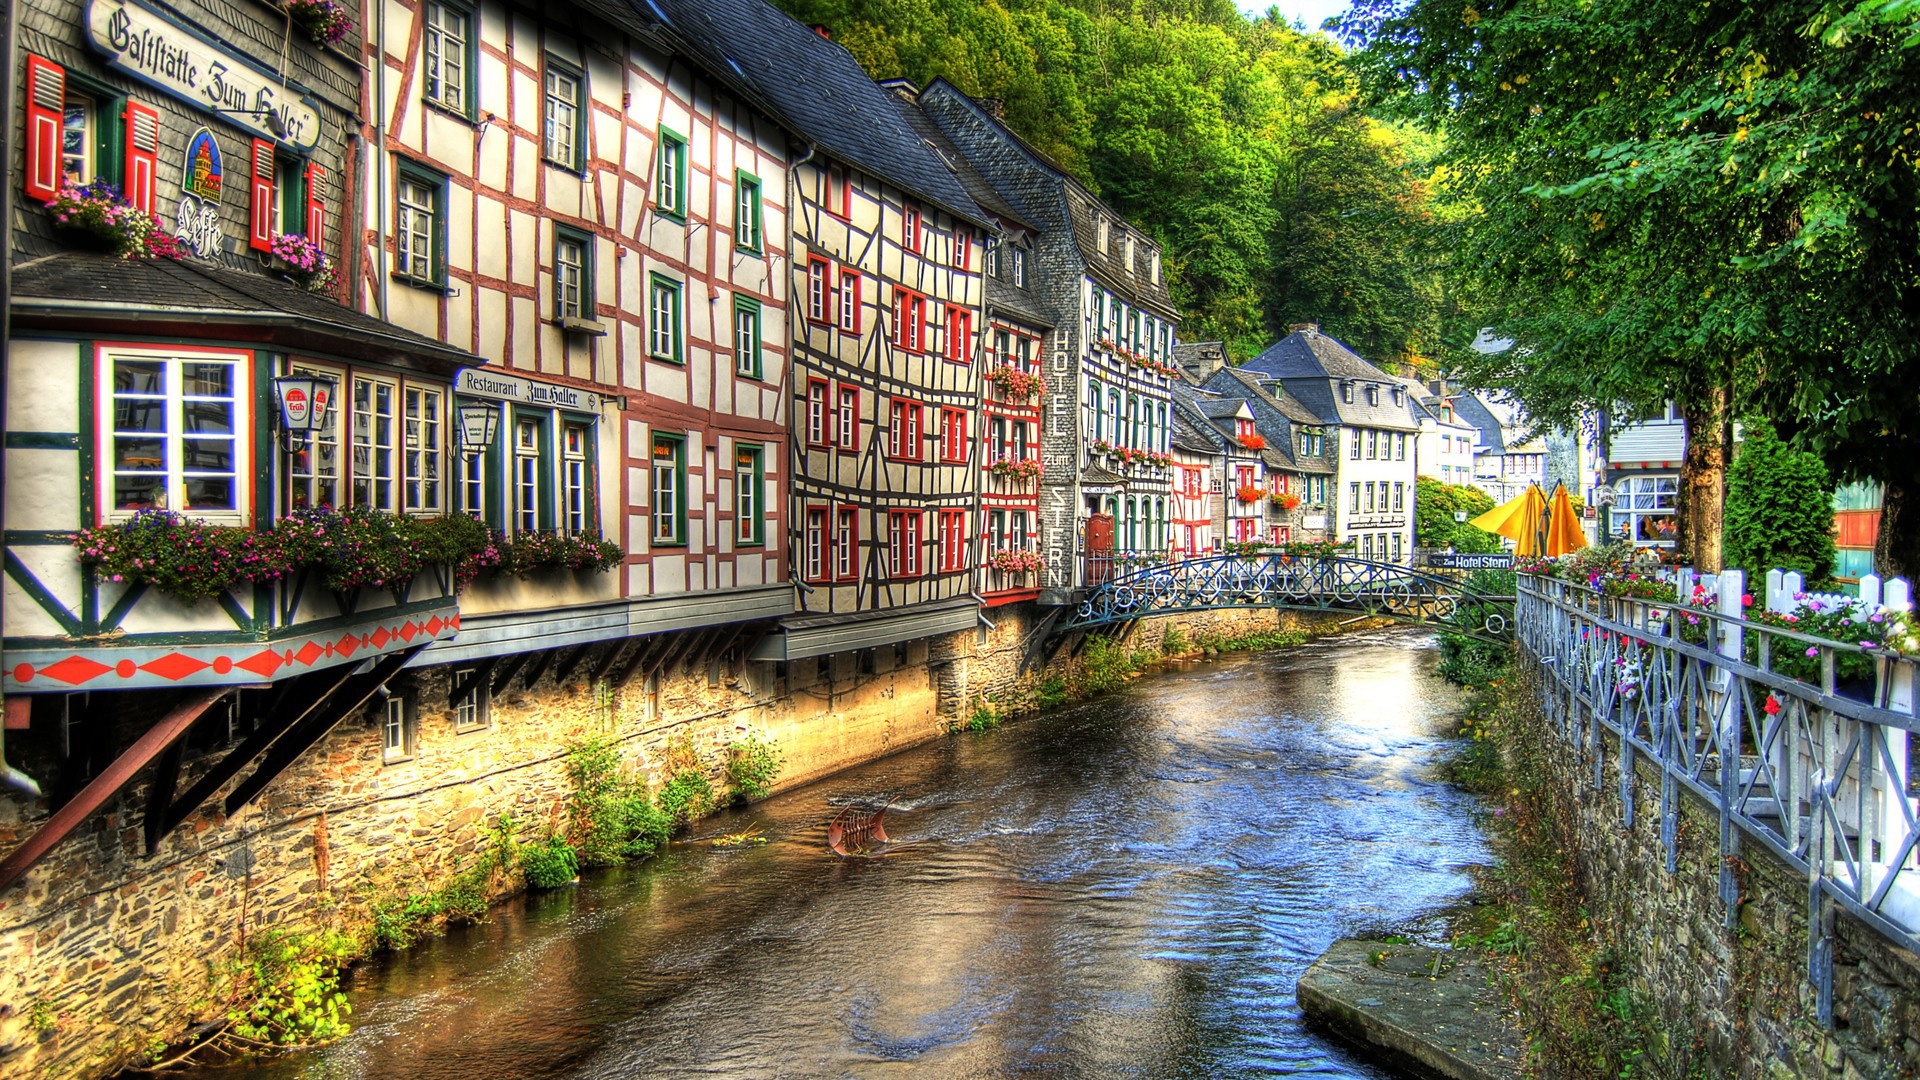 Découvrez Montjoie, petite ville idyllique de l’Eifel